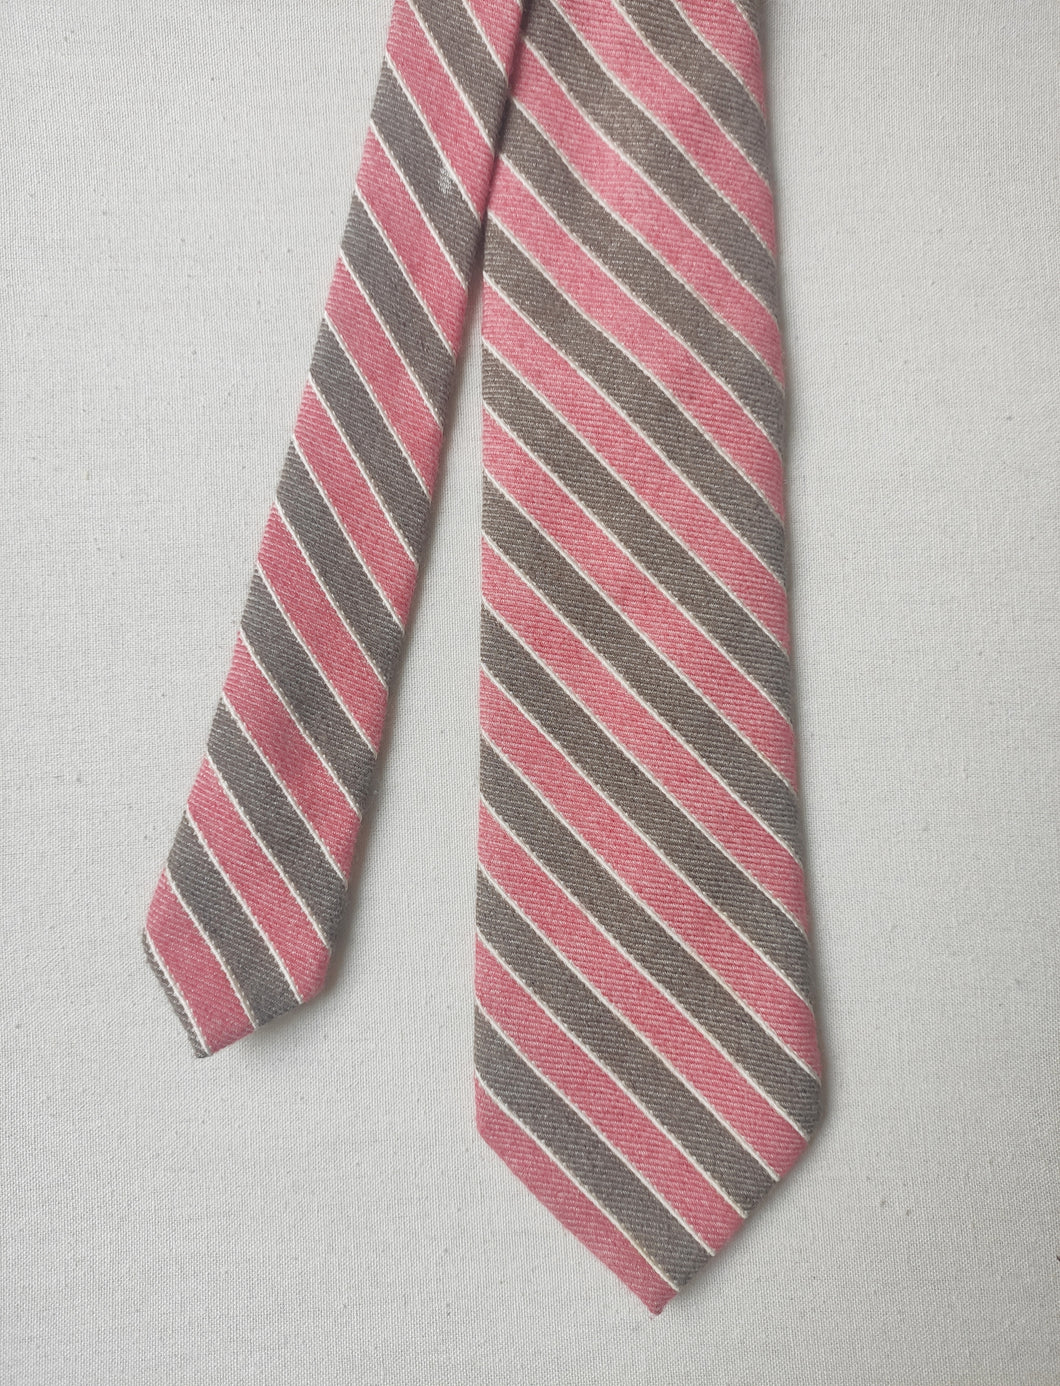 Façonnable cravate club beige et rose en cachemire et soie Made in Italy